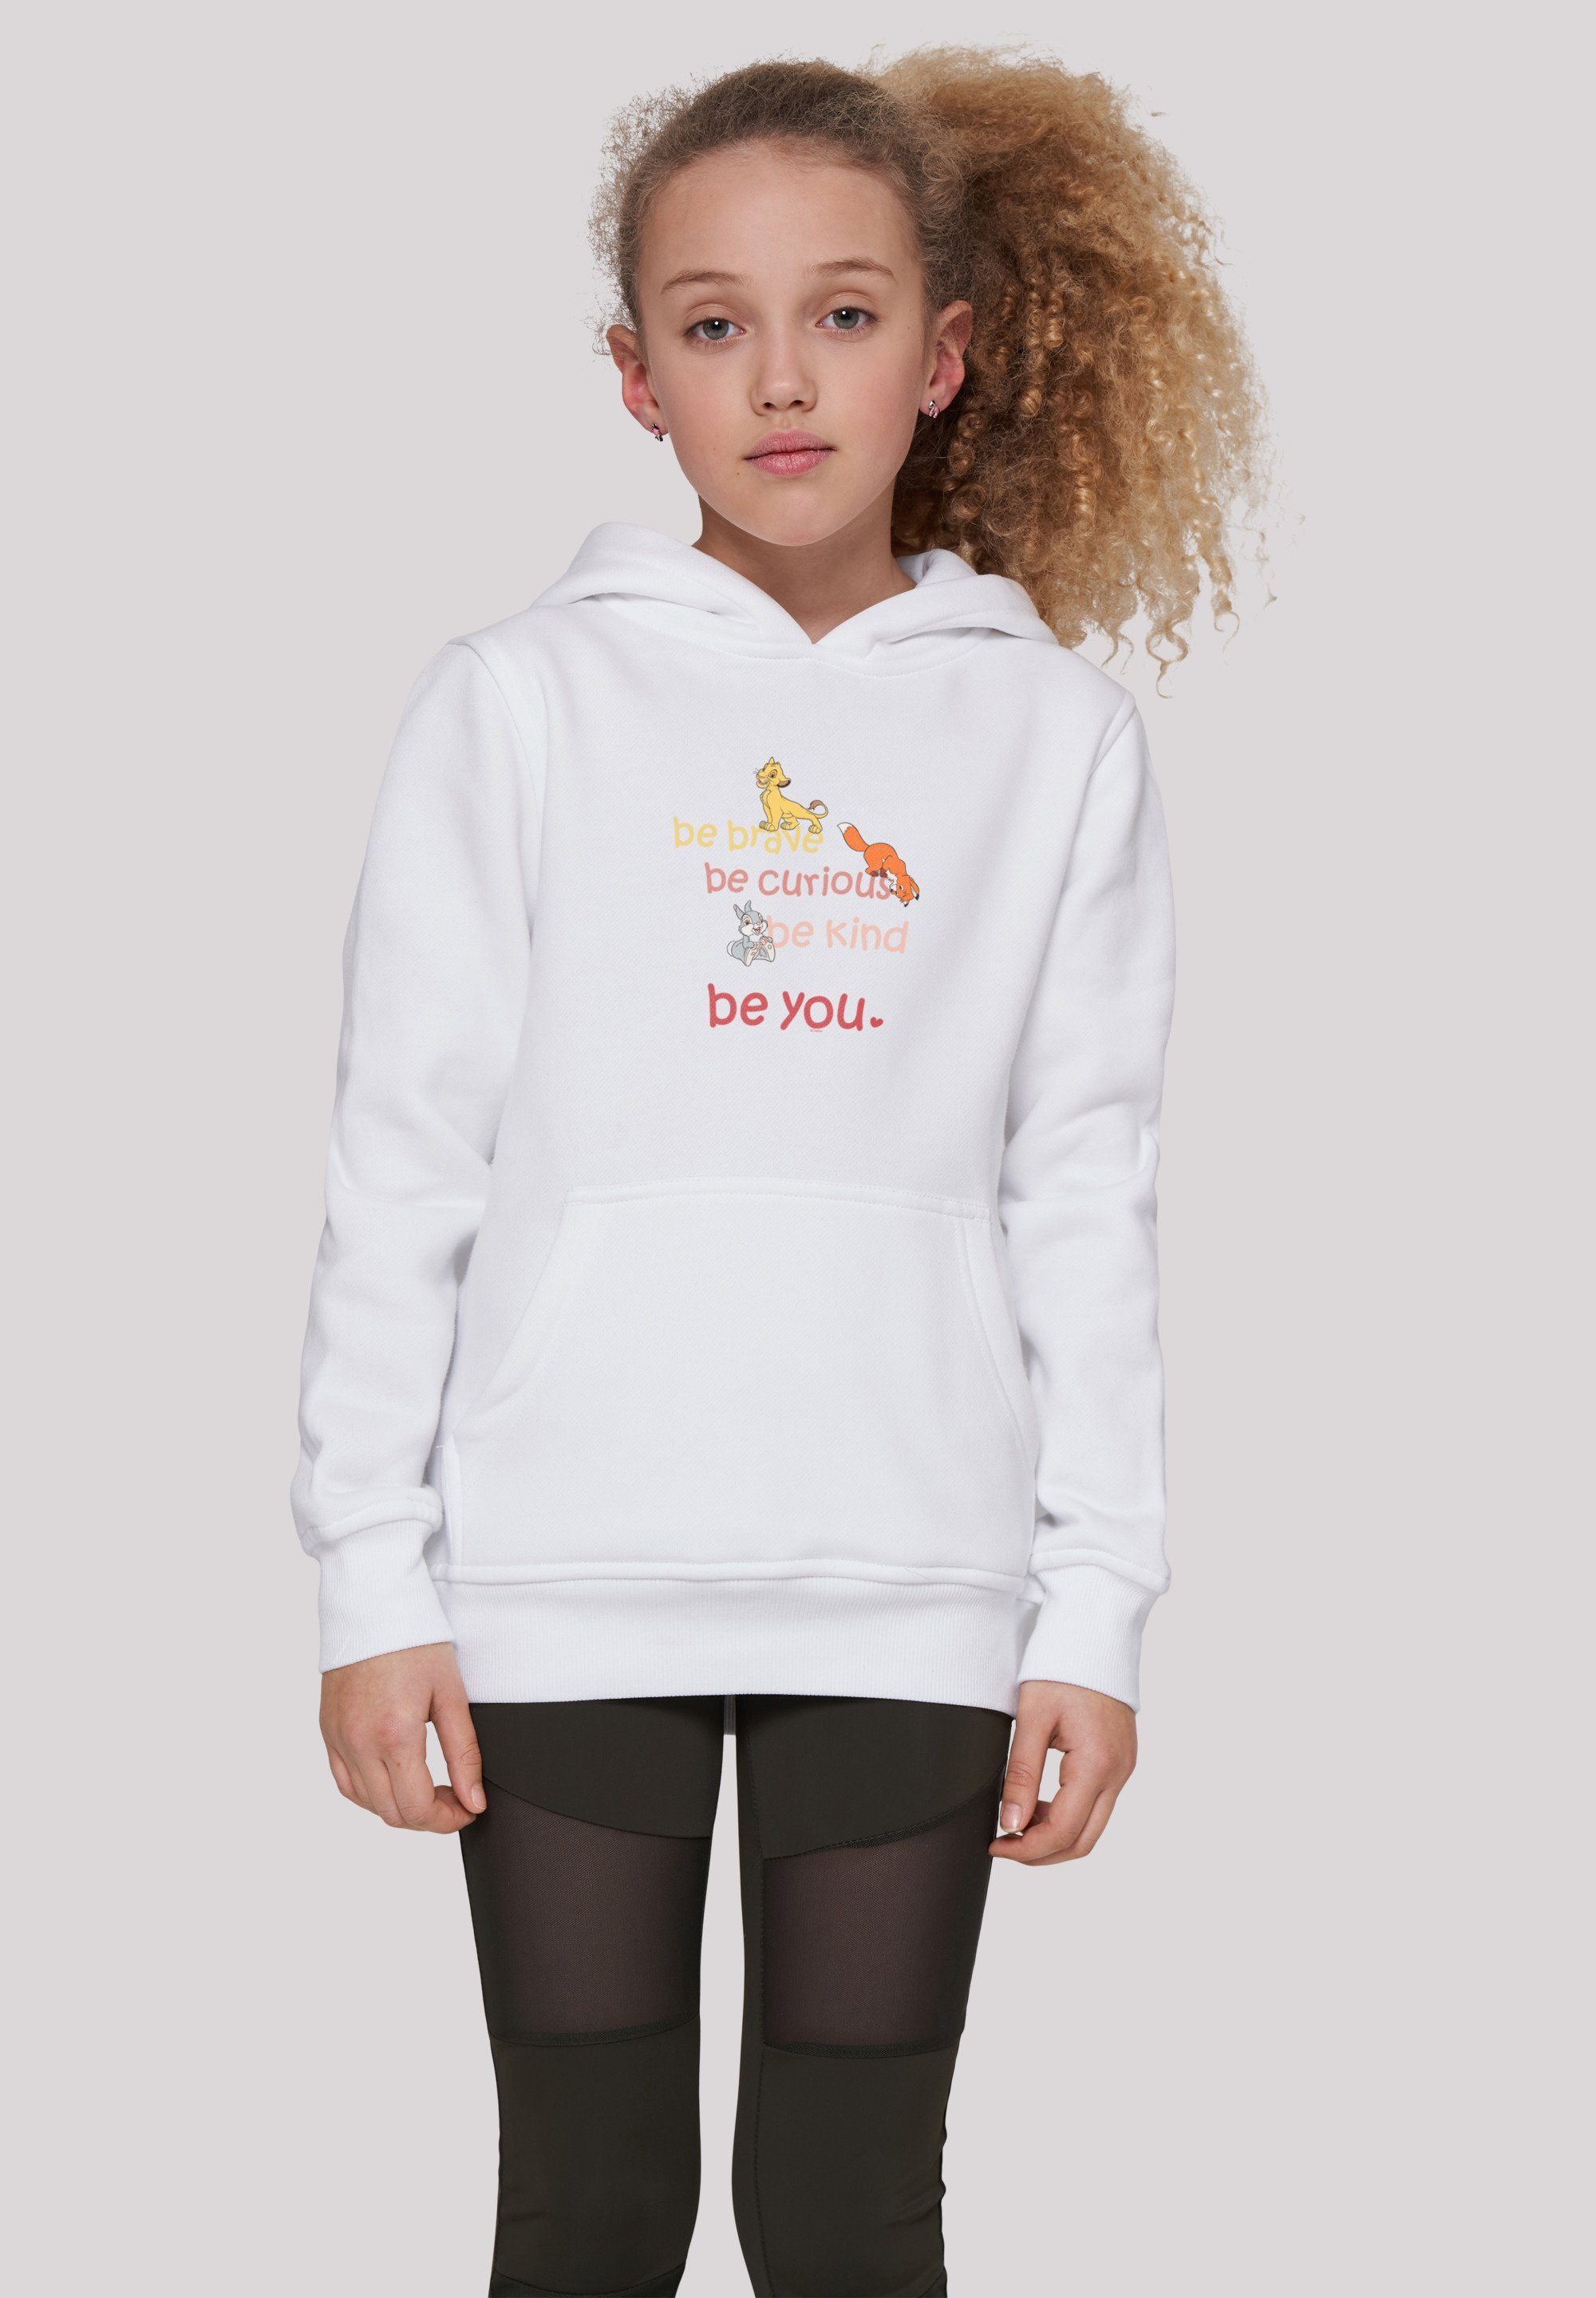 Curious Sweatshirt Kinder,Premium Be F4NT4STIC weiß Unisex Disney Merch,Jungen,Mädchen,Bedruckt Brave Be